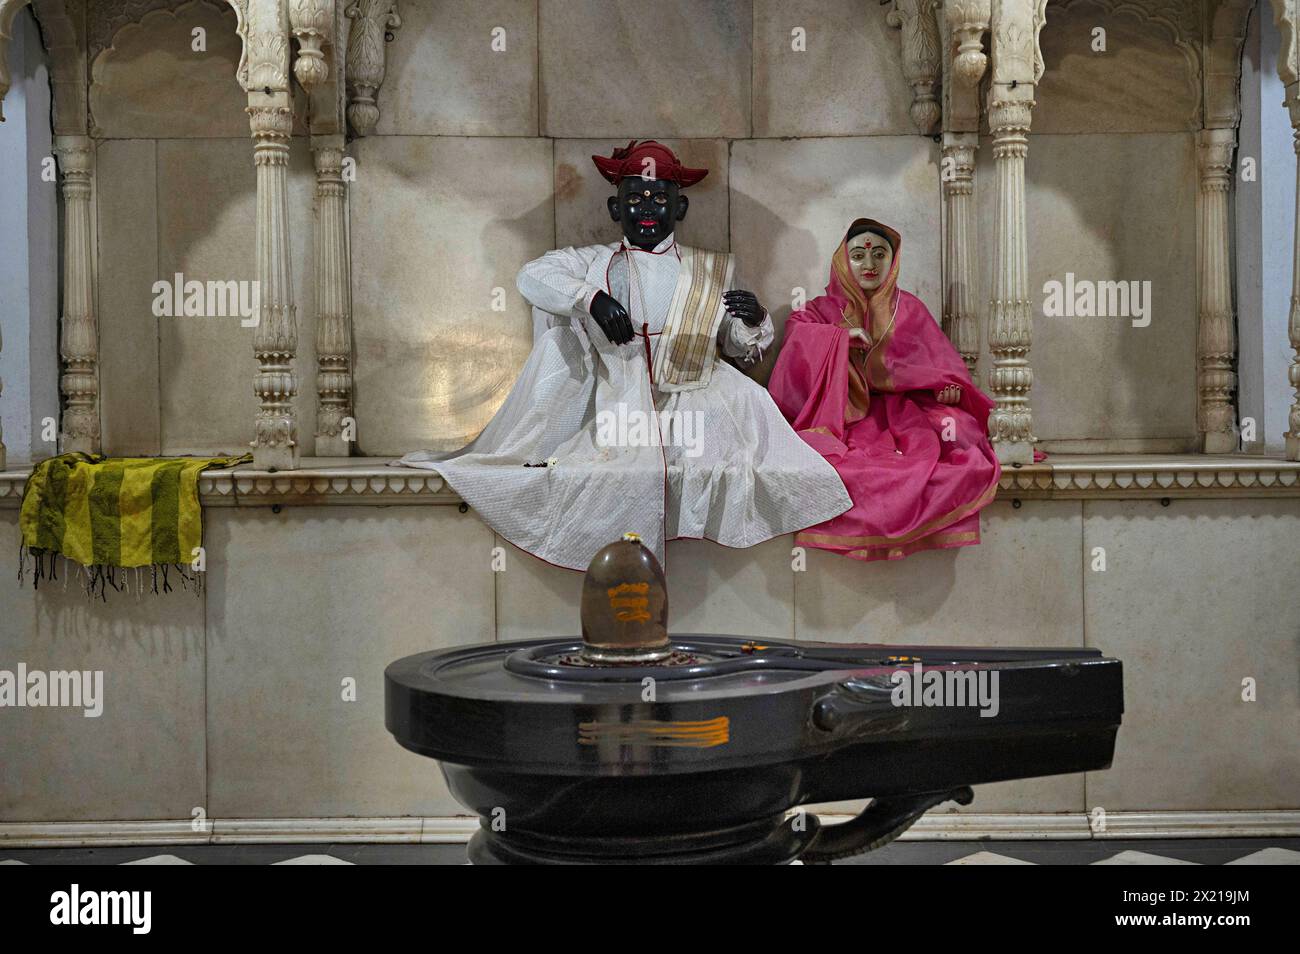 Idoles de Shrimant Daulatrao Maharaj Scindia et sa femme à l'intérieur du Chhatri de Shrimant Daulatrao Maharaj Scindia, complexe de la dynastie Chhatris de Scindia Banque D'Images